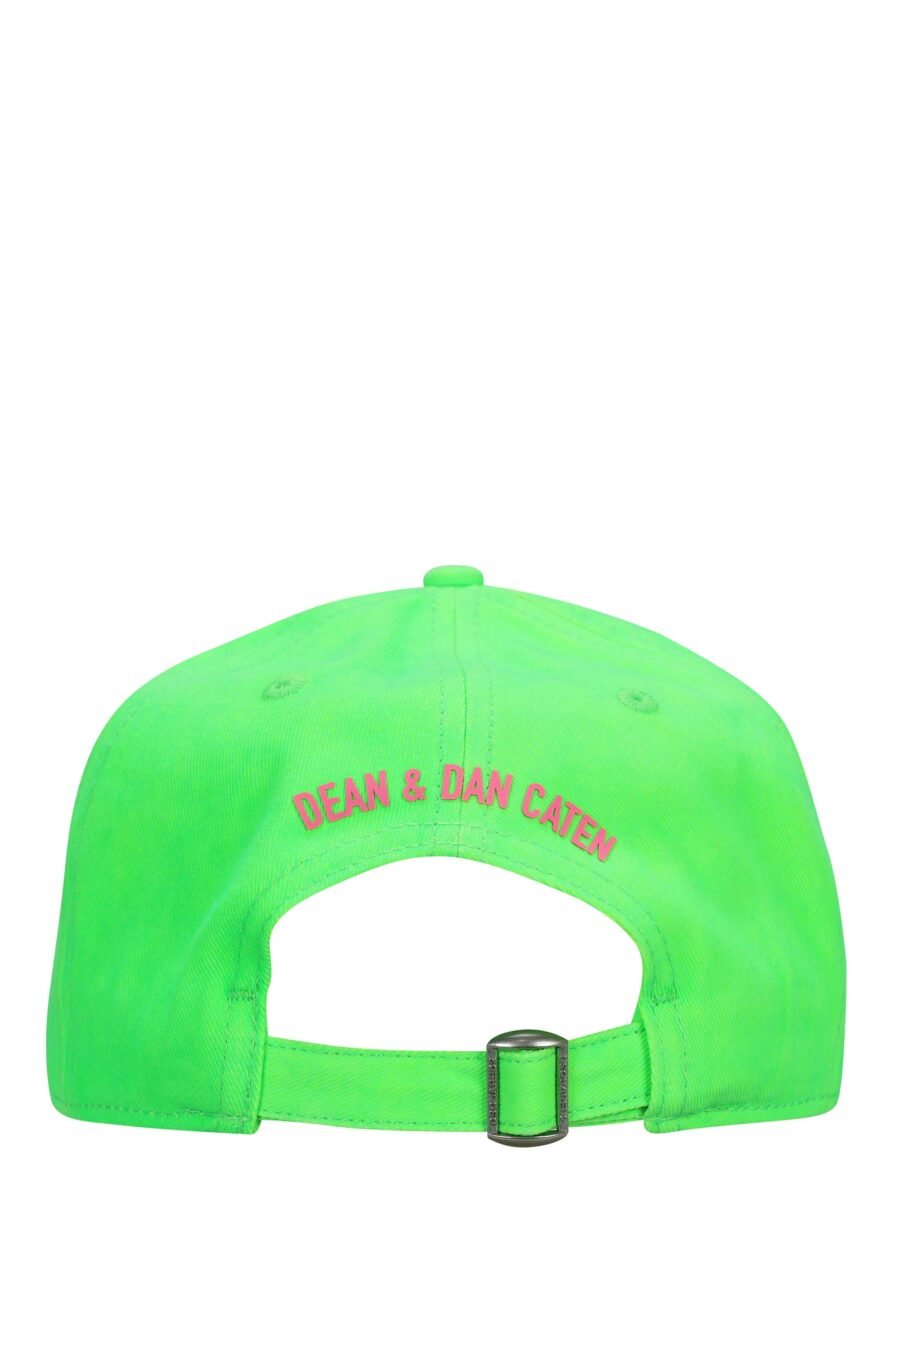 Gorra verde neón con maxilogo "icon" fucsia - 8055777275597 1